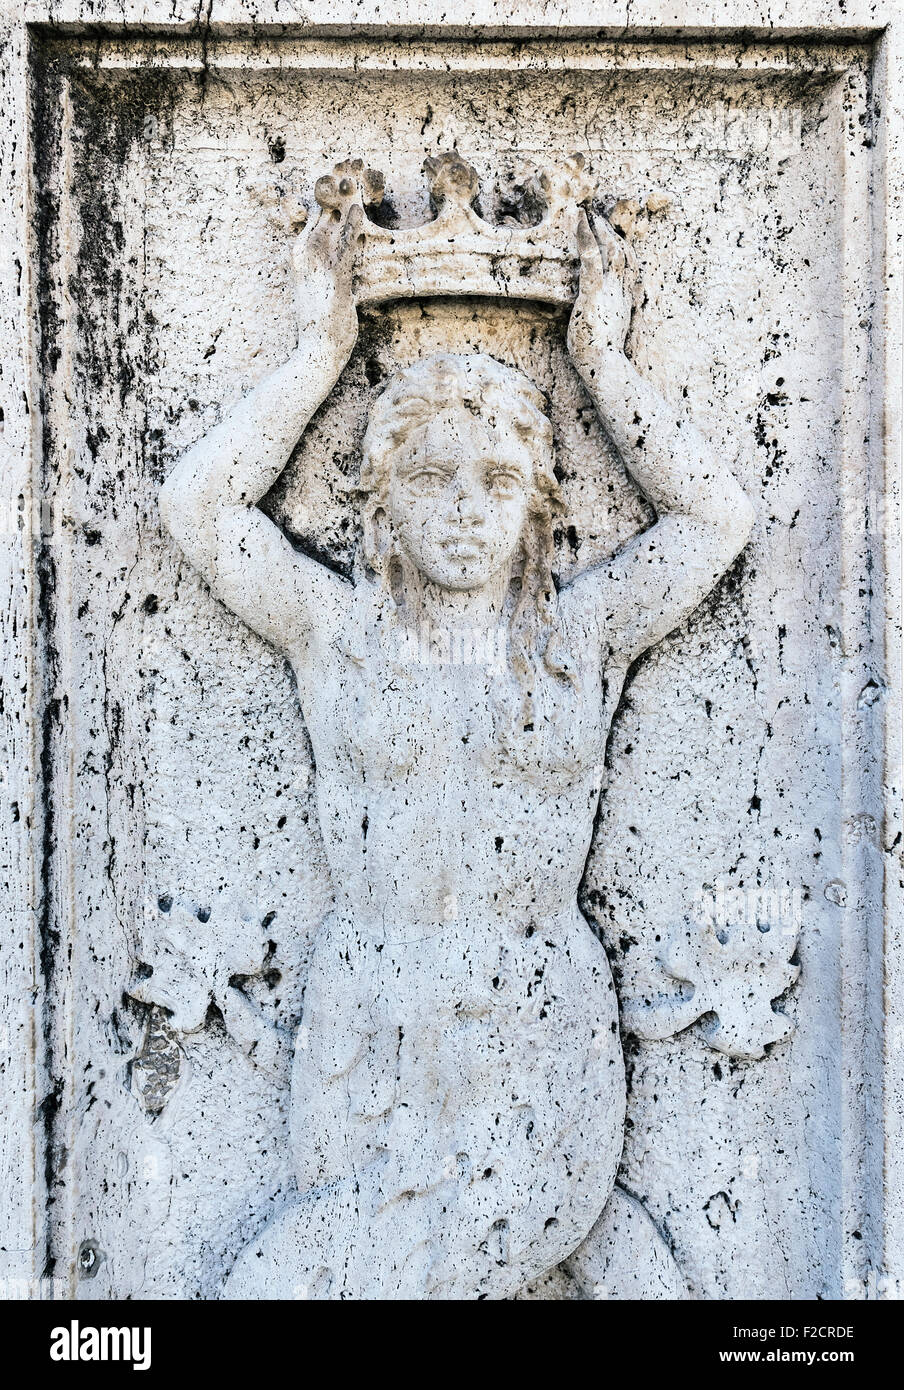 Sculpture bas-relief d'une femme avec couronne situé dans le Palazzo del Quirinale, Rome, Italie Banque D'Images